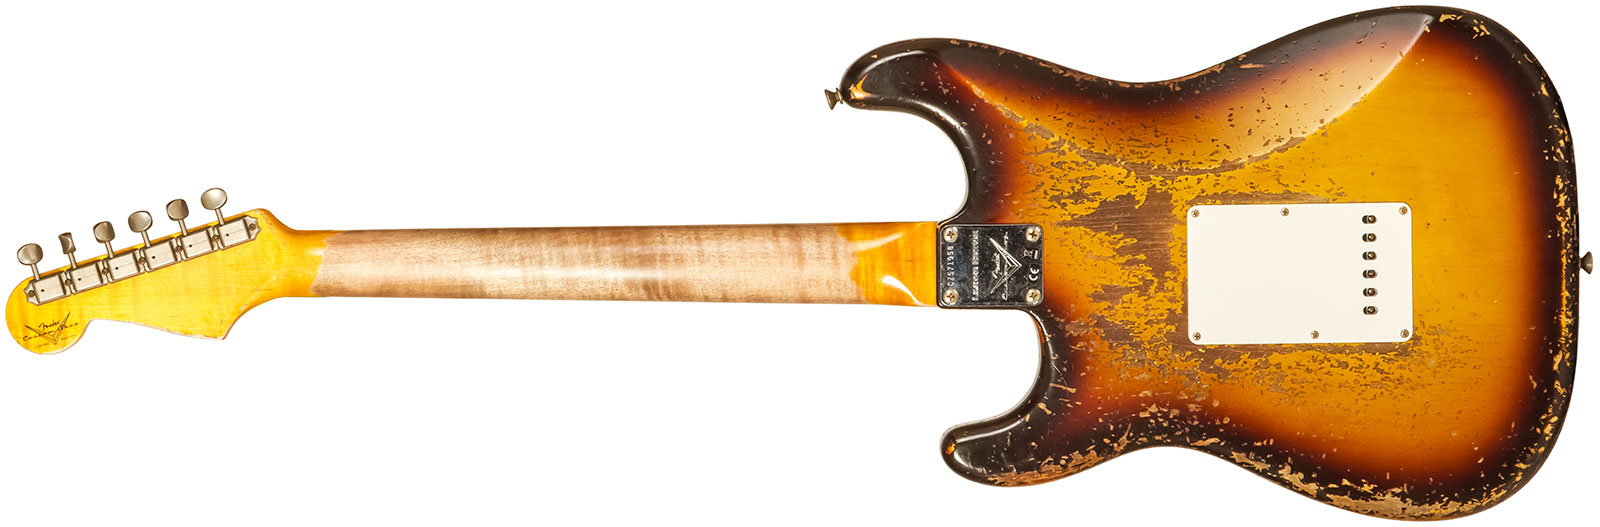 Fender Custom Shop Strat 1959 3s Trem Rw #cz571958 - Super Heavy Relic Aged Chocolate 3-color Sunburst - Guitare Électrique Forme Str - Variation 1